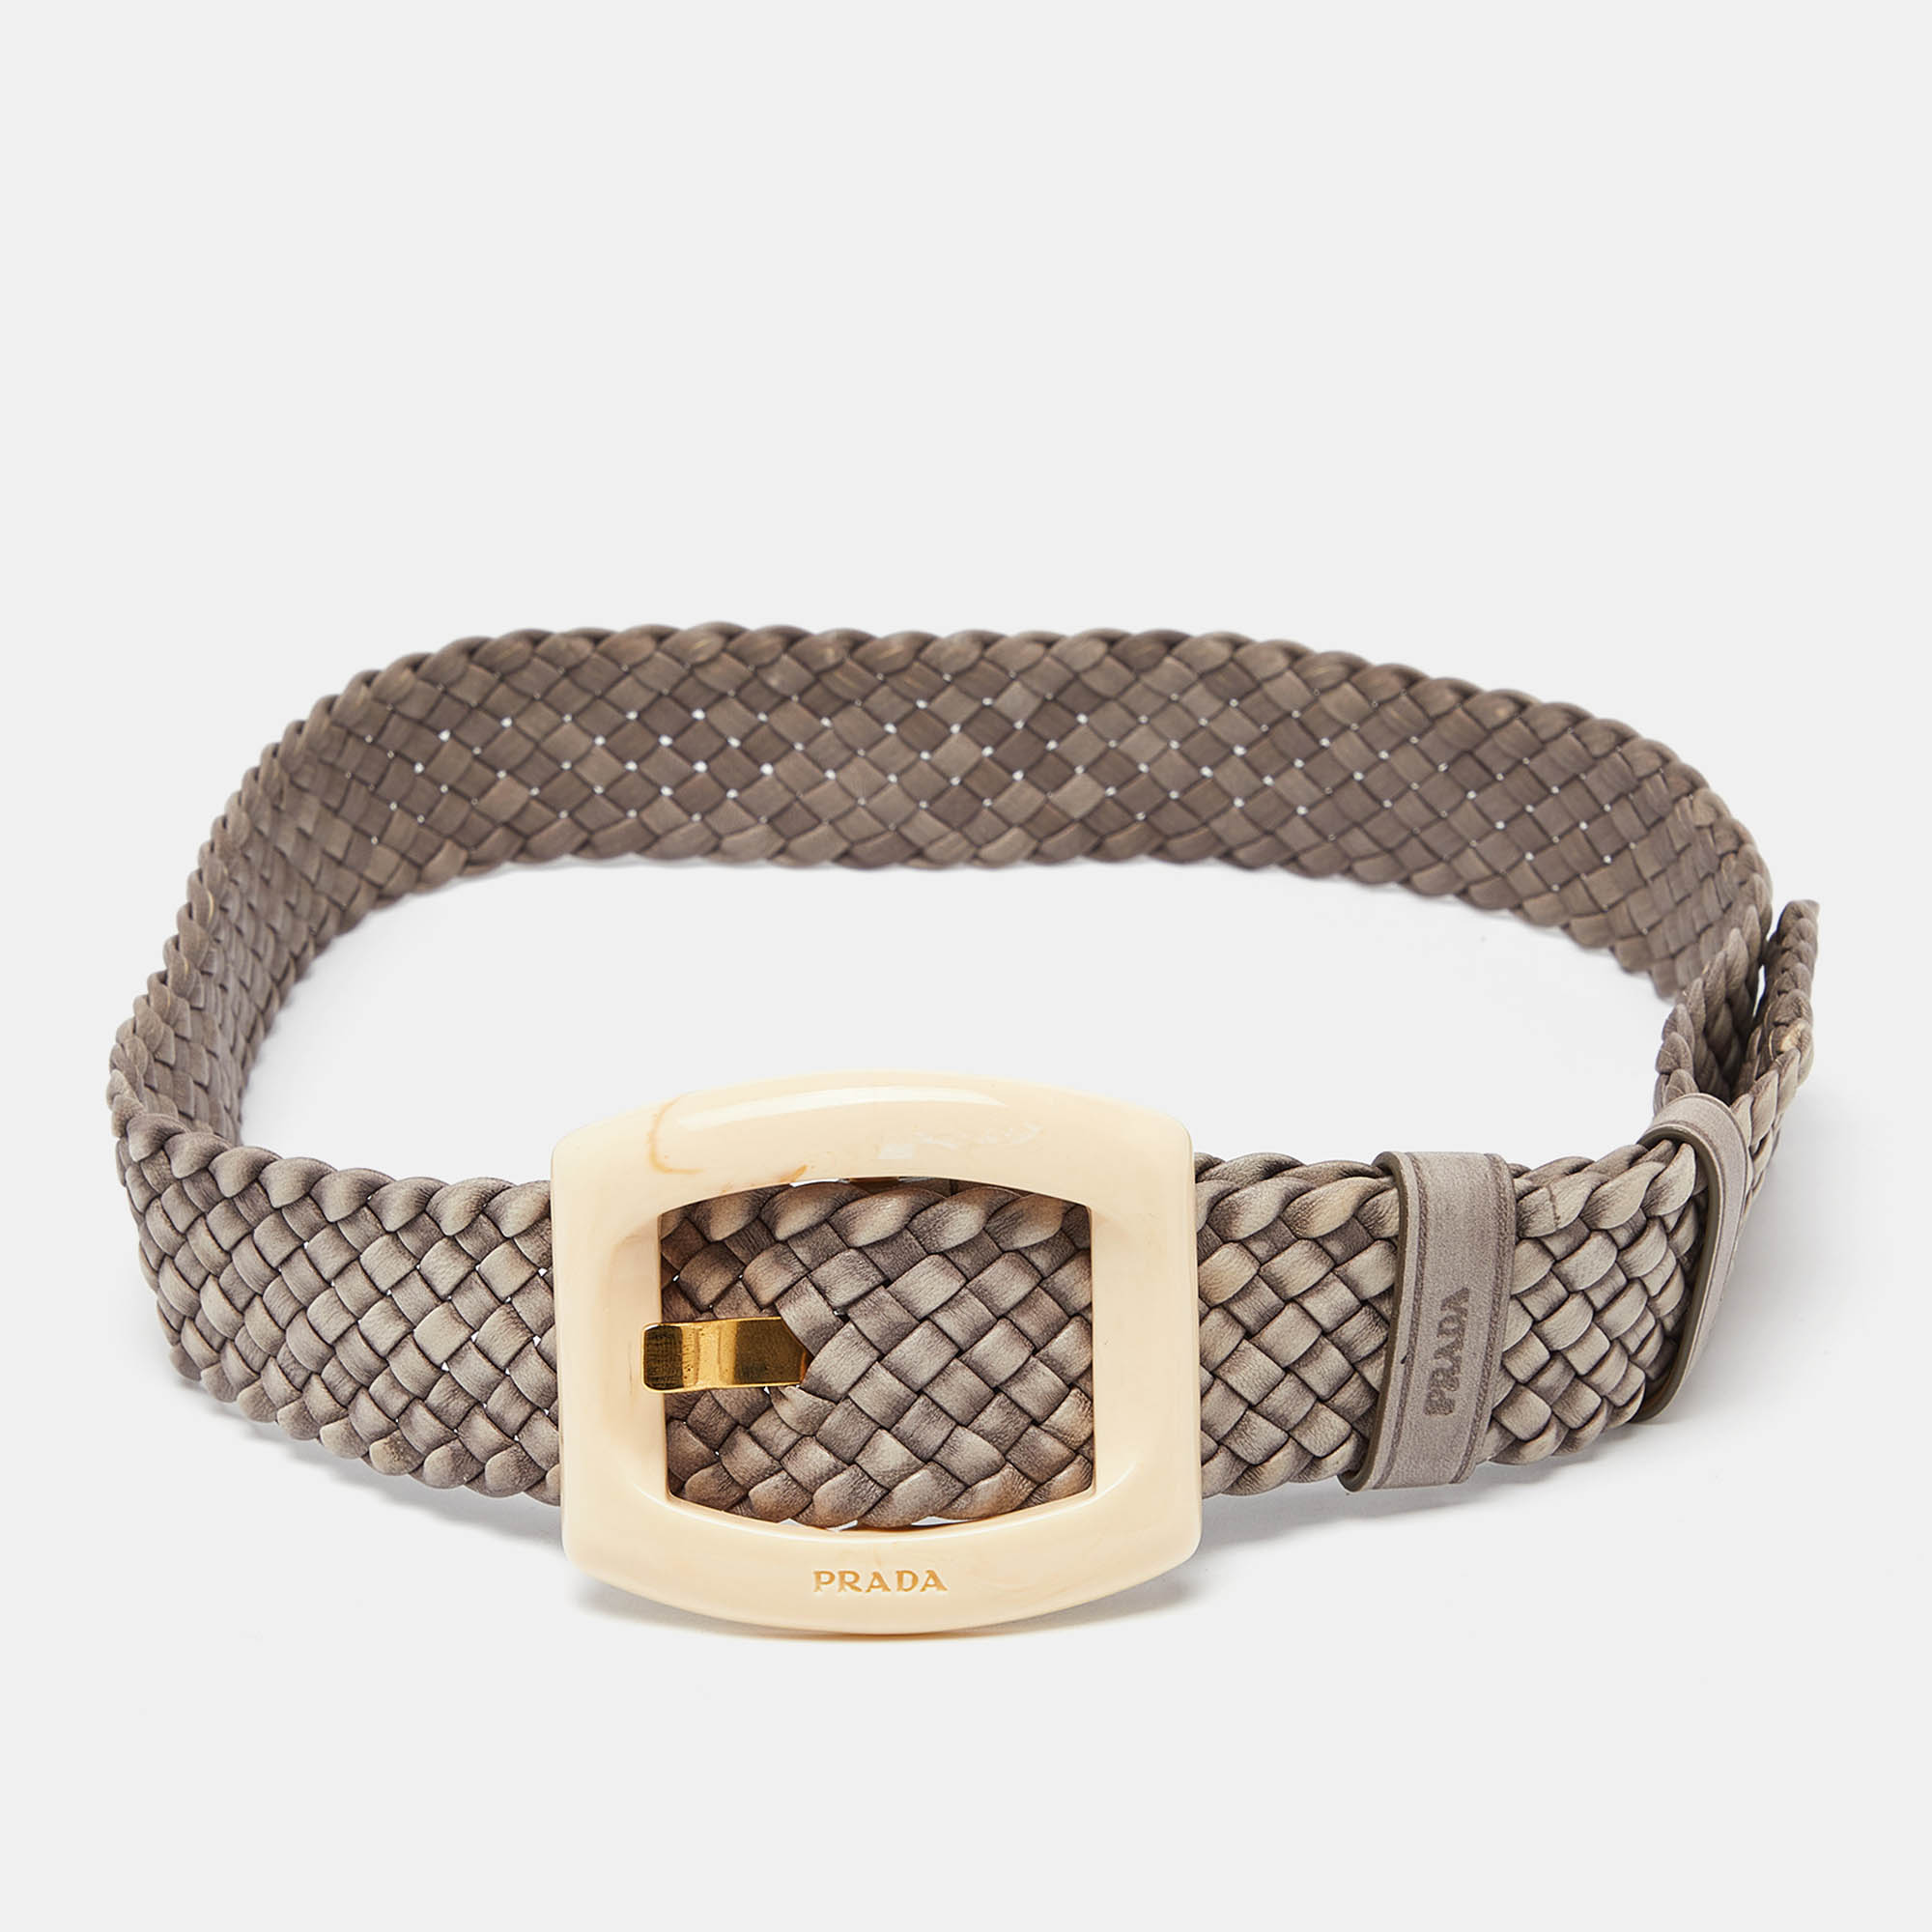 Prada grey braided leather buckle belt 80cm